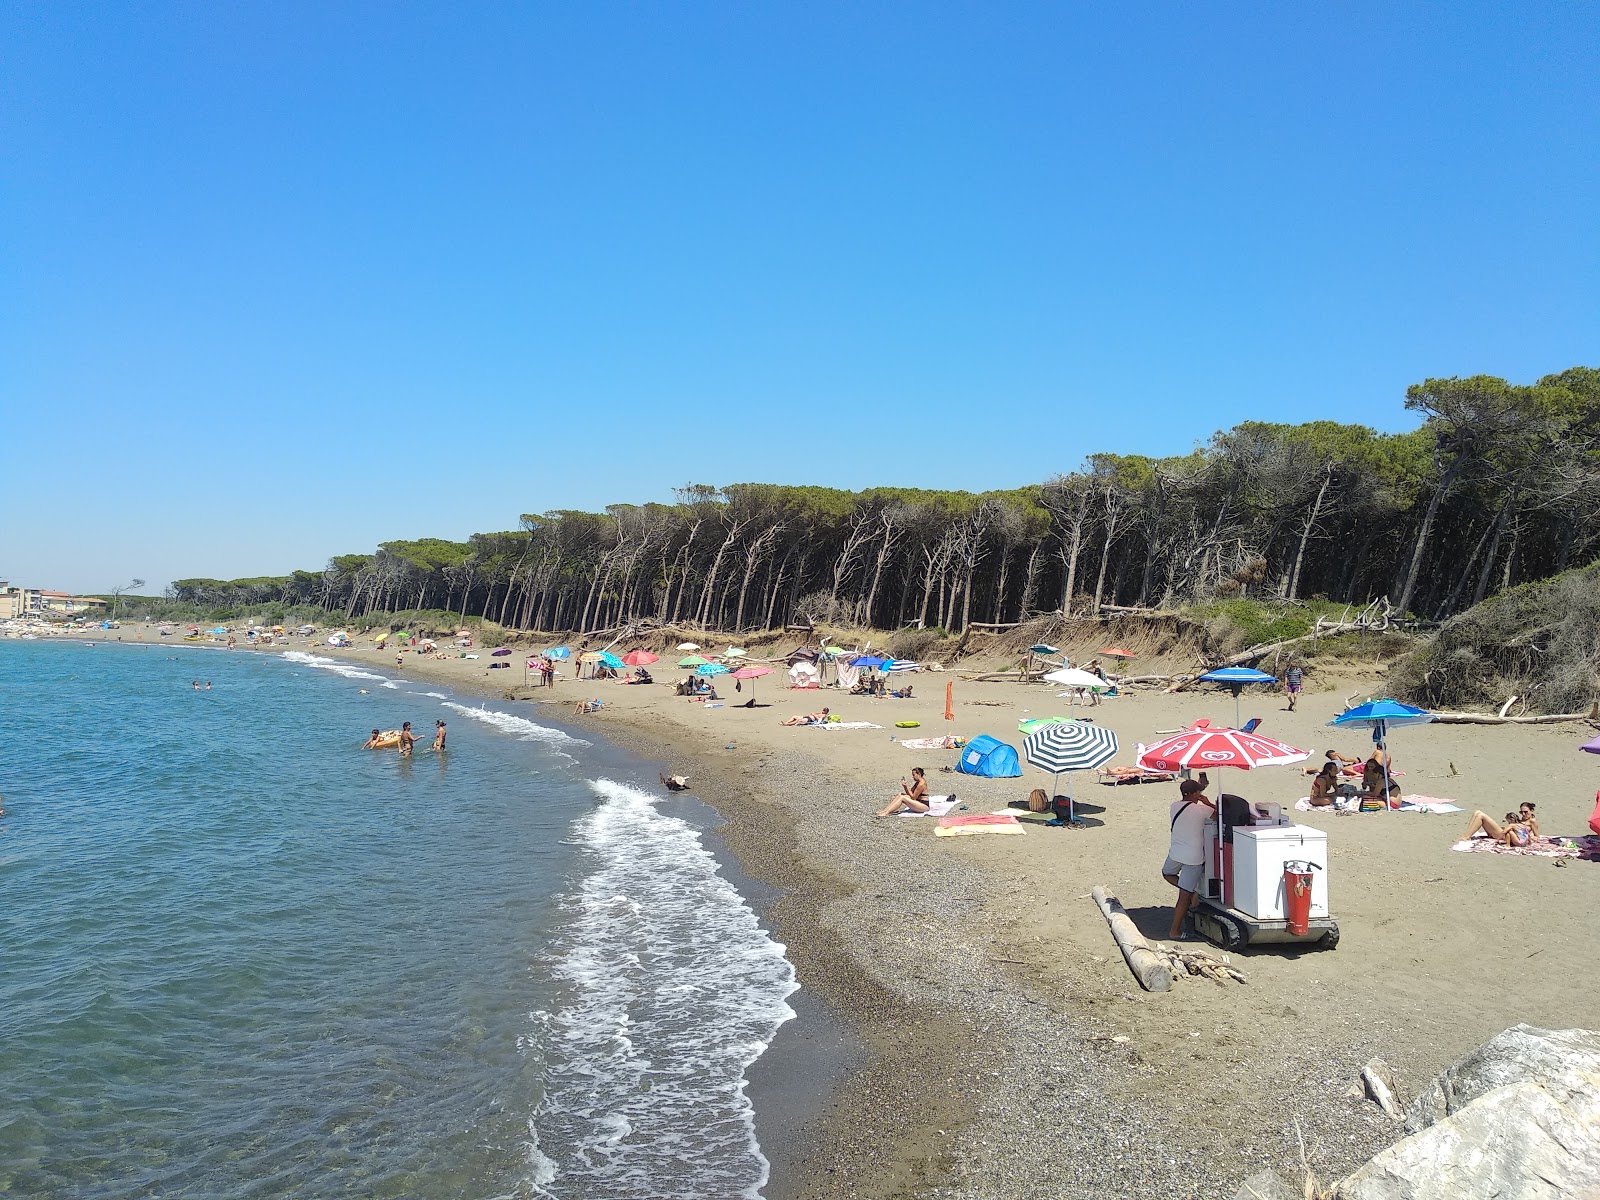 Spiaggia di Andalu'in fotoğrafı koyu i̇nce çakıl yüzey ile